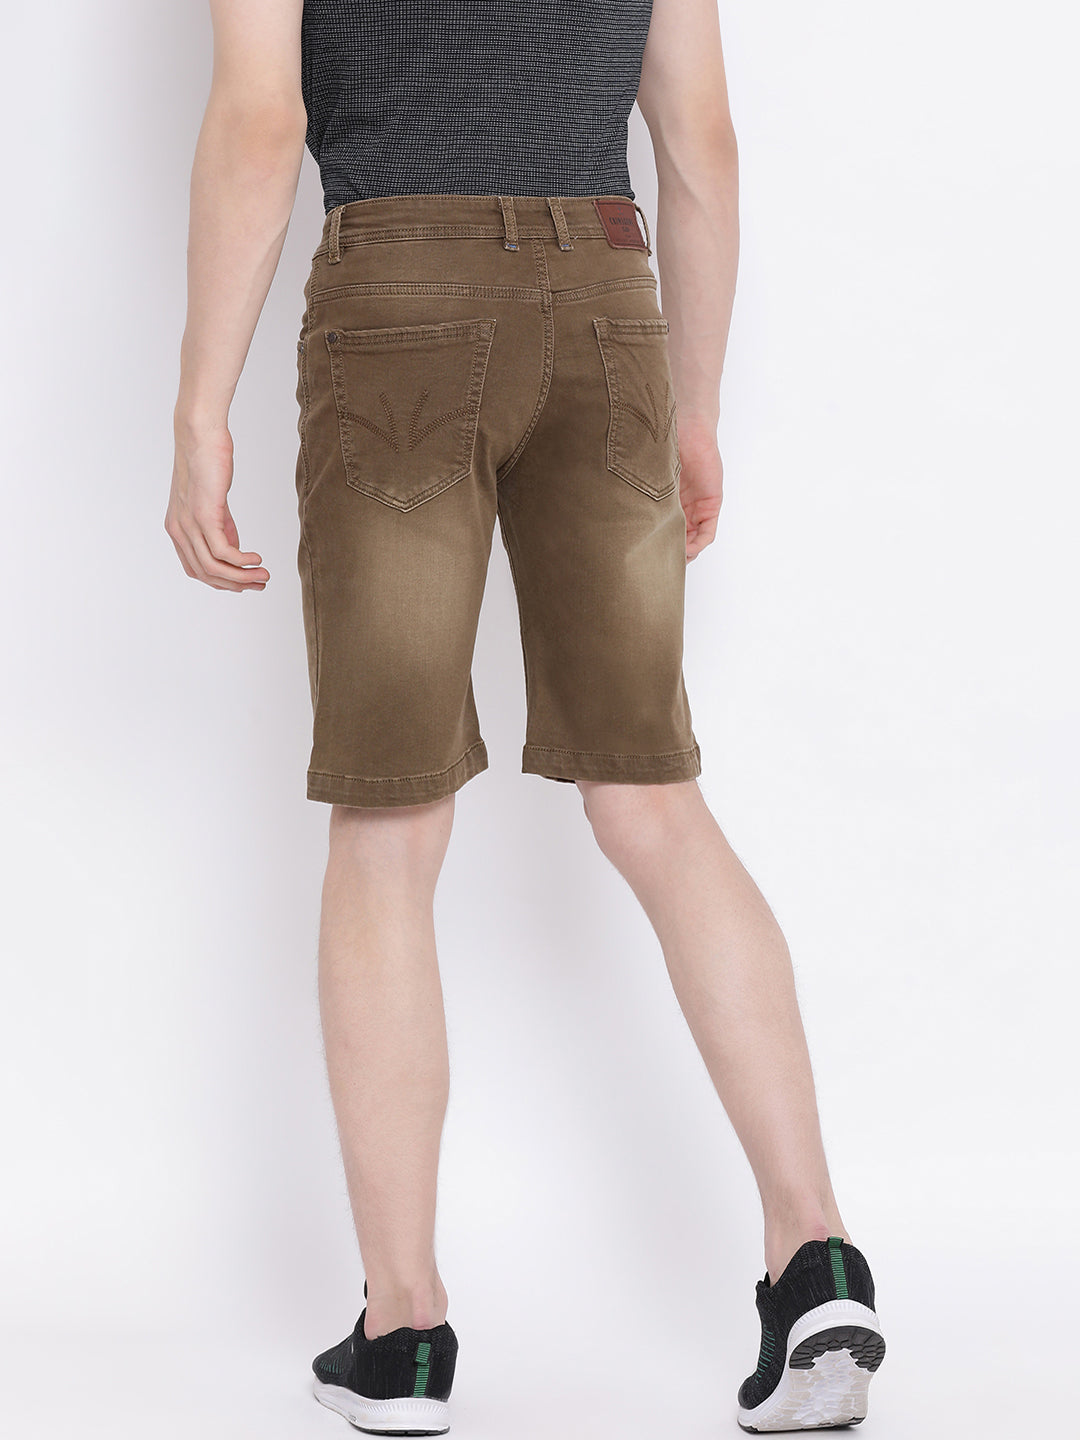 Brown shorts - Men Shorts